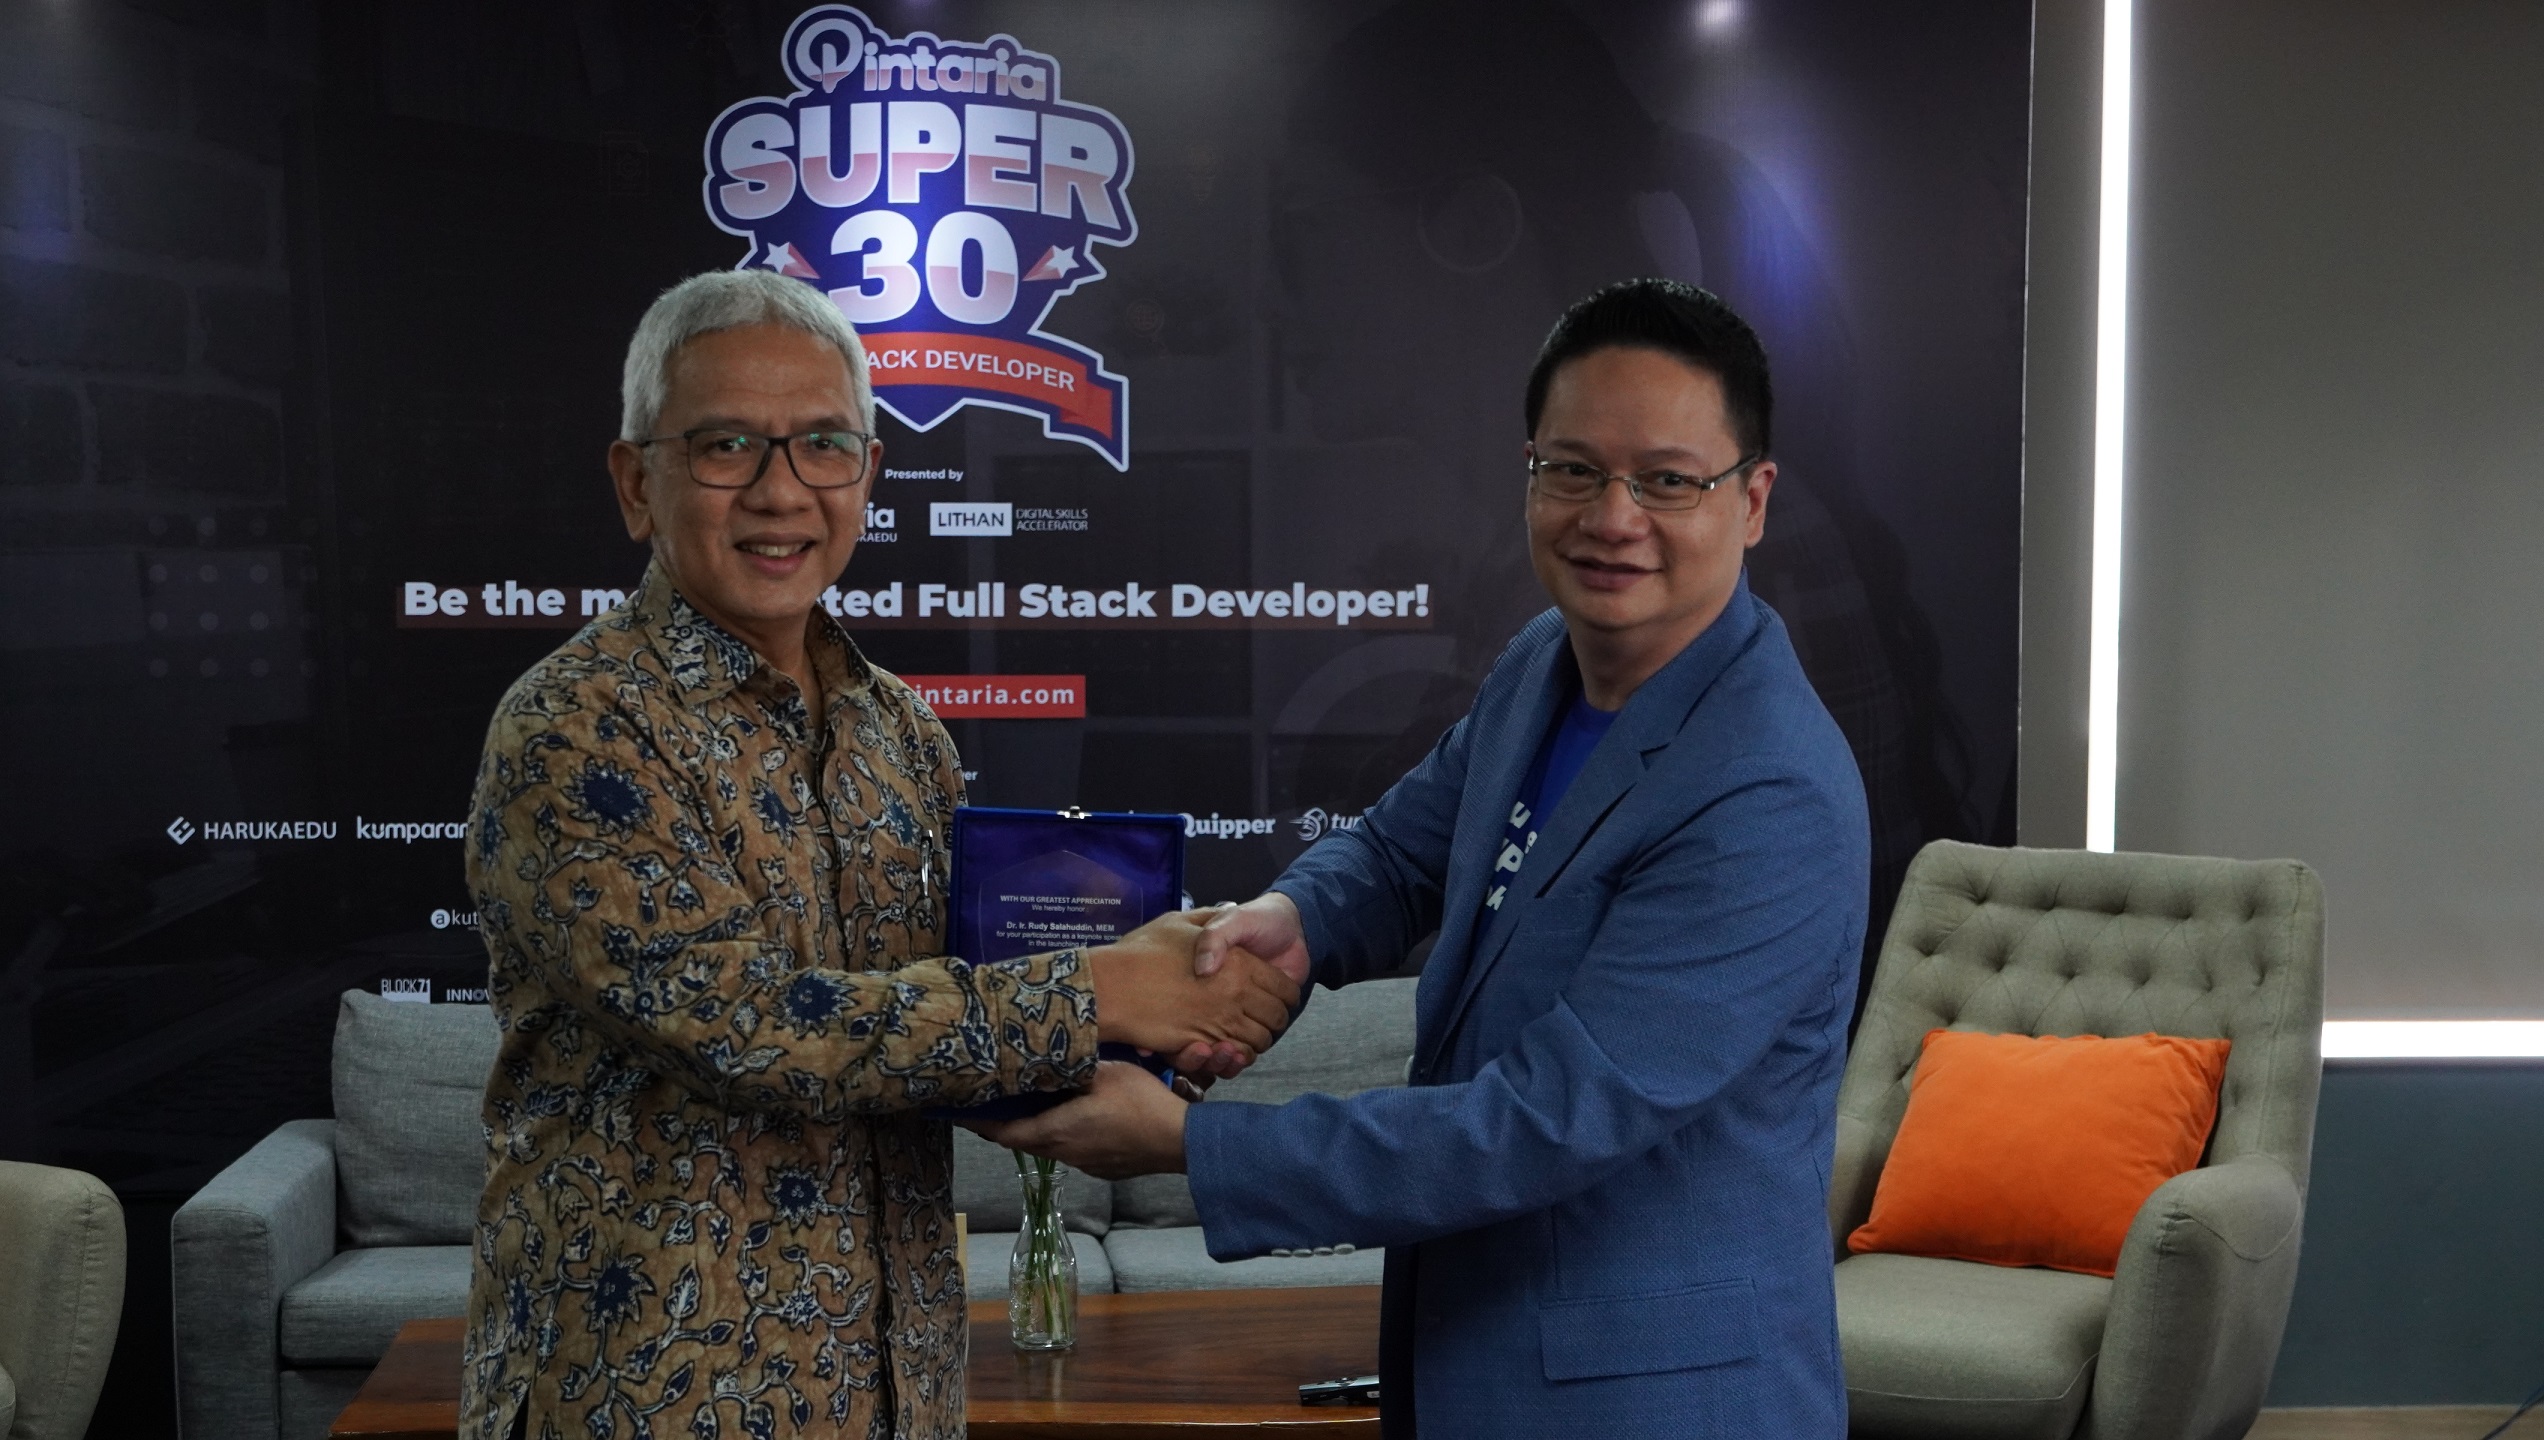 Pintara SUPER30, Beasiswa Kursus Full Stack Developer Bagi 30 Orang Terbaik se-Indonesia